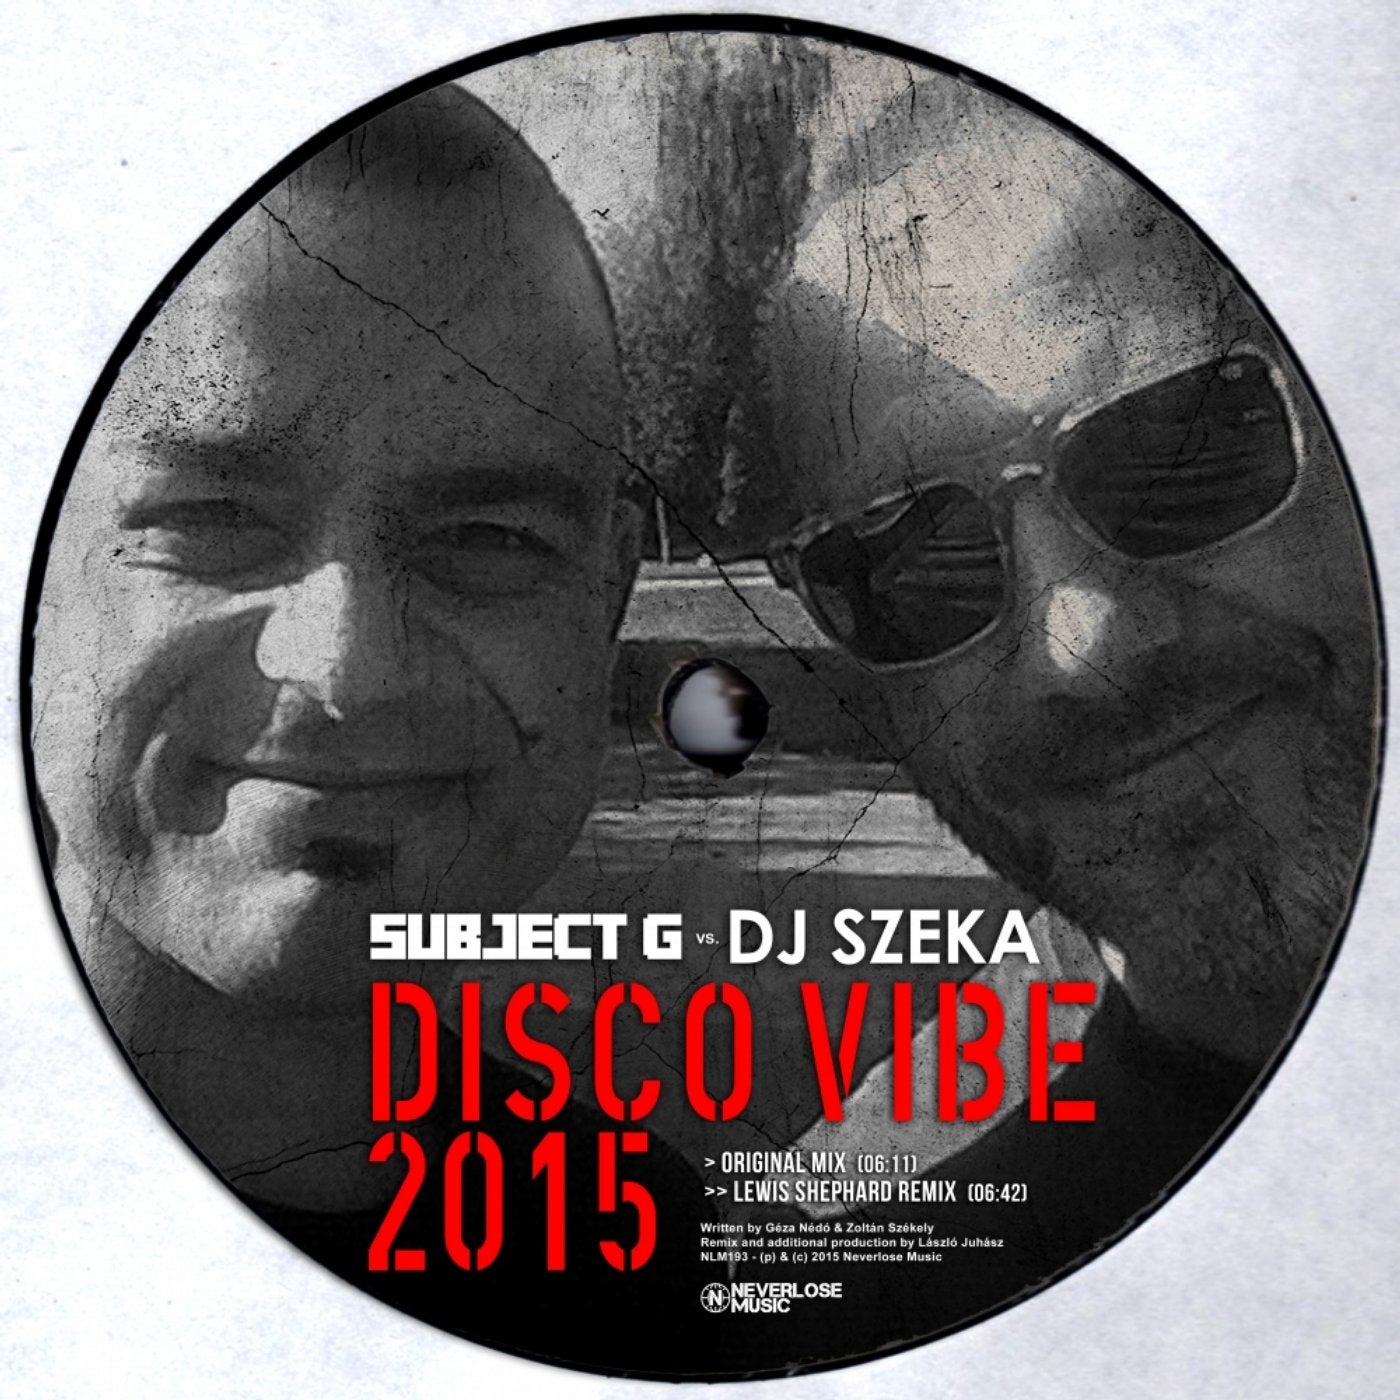 Disco Vibe 2015